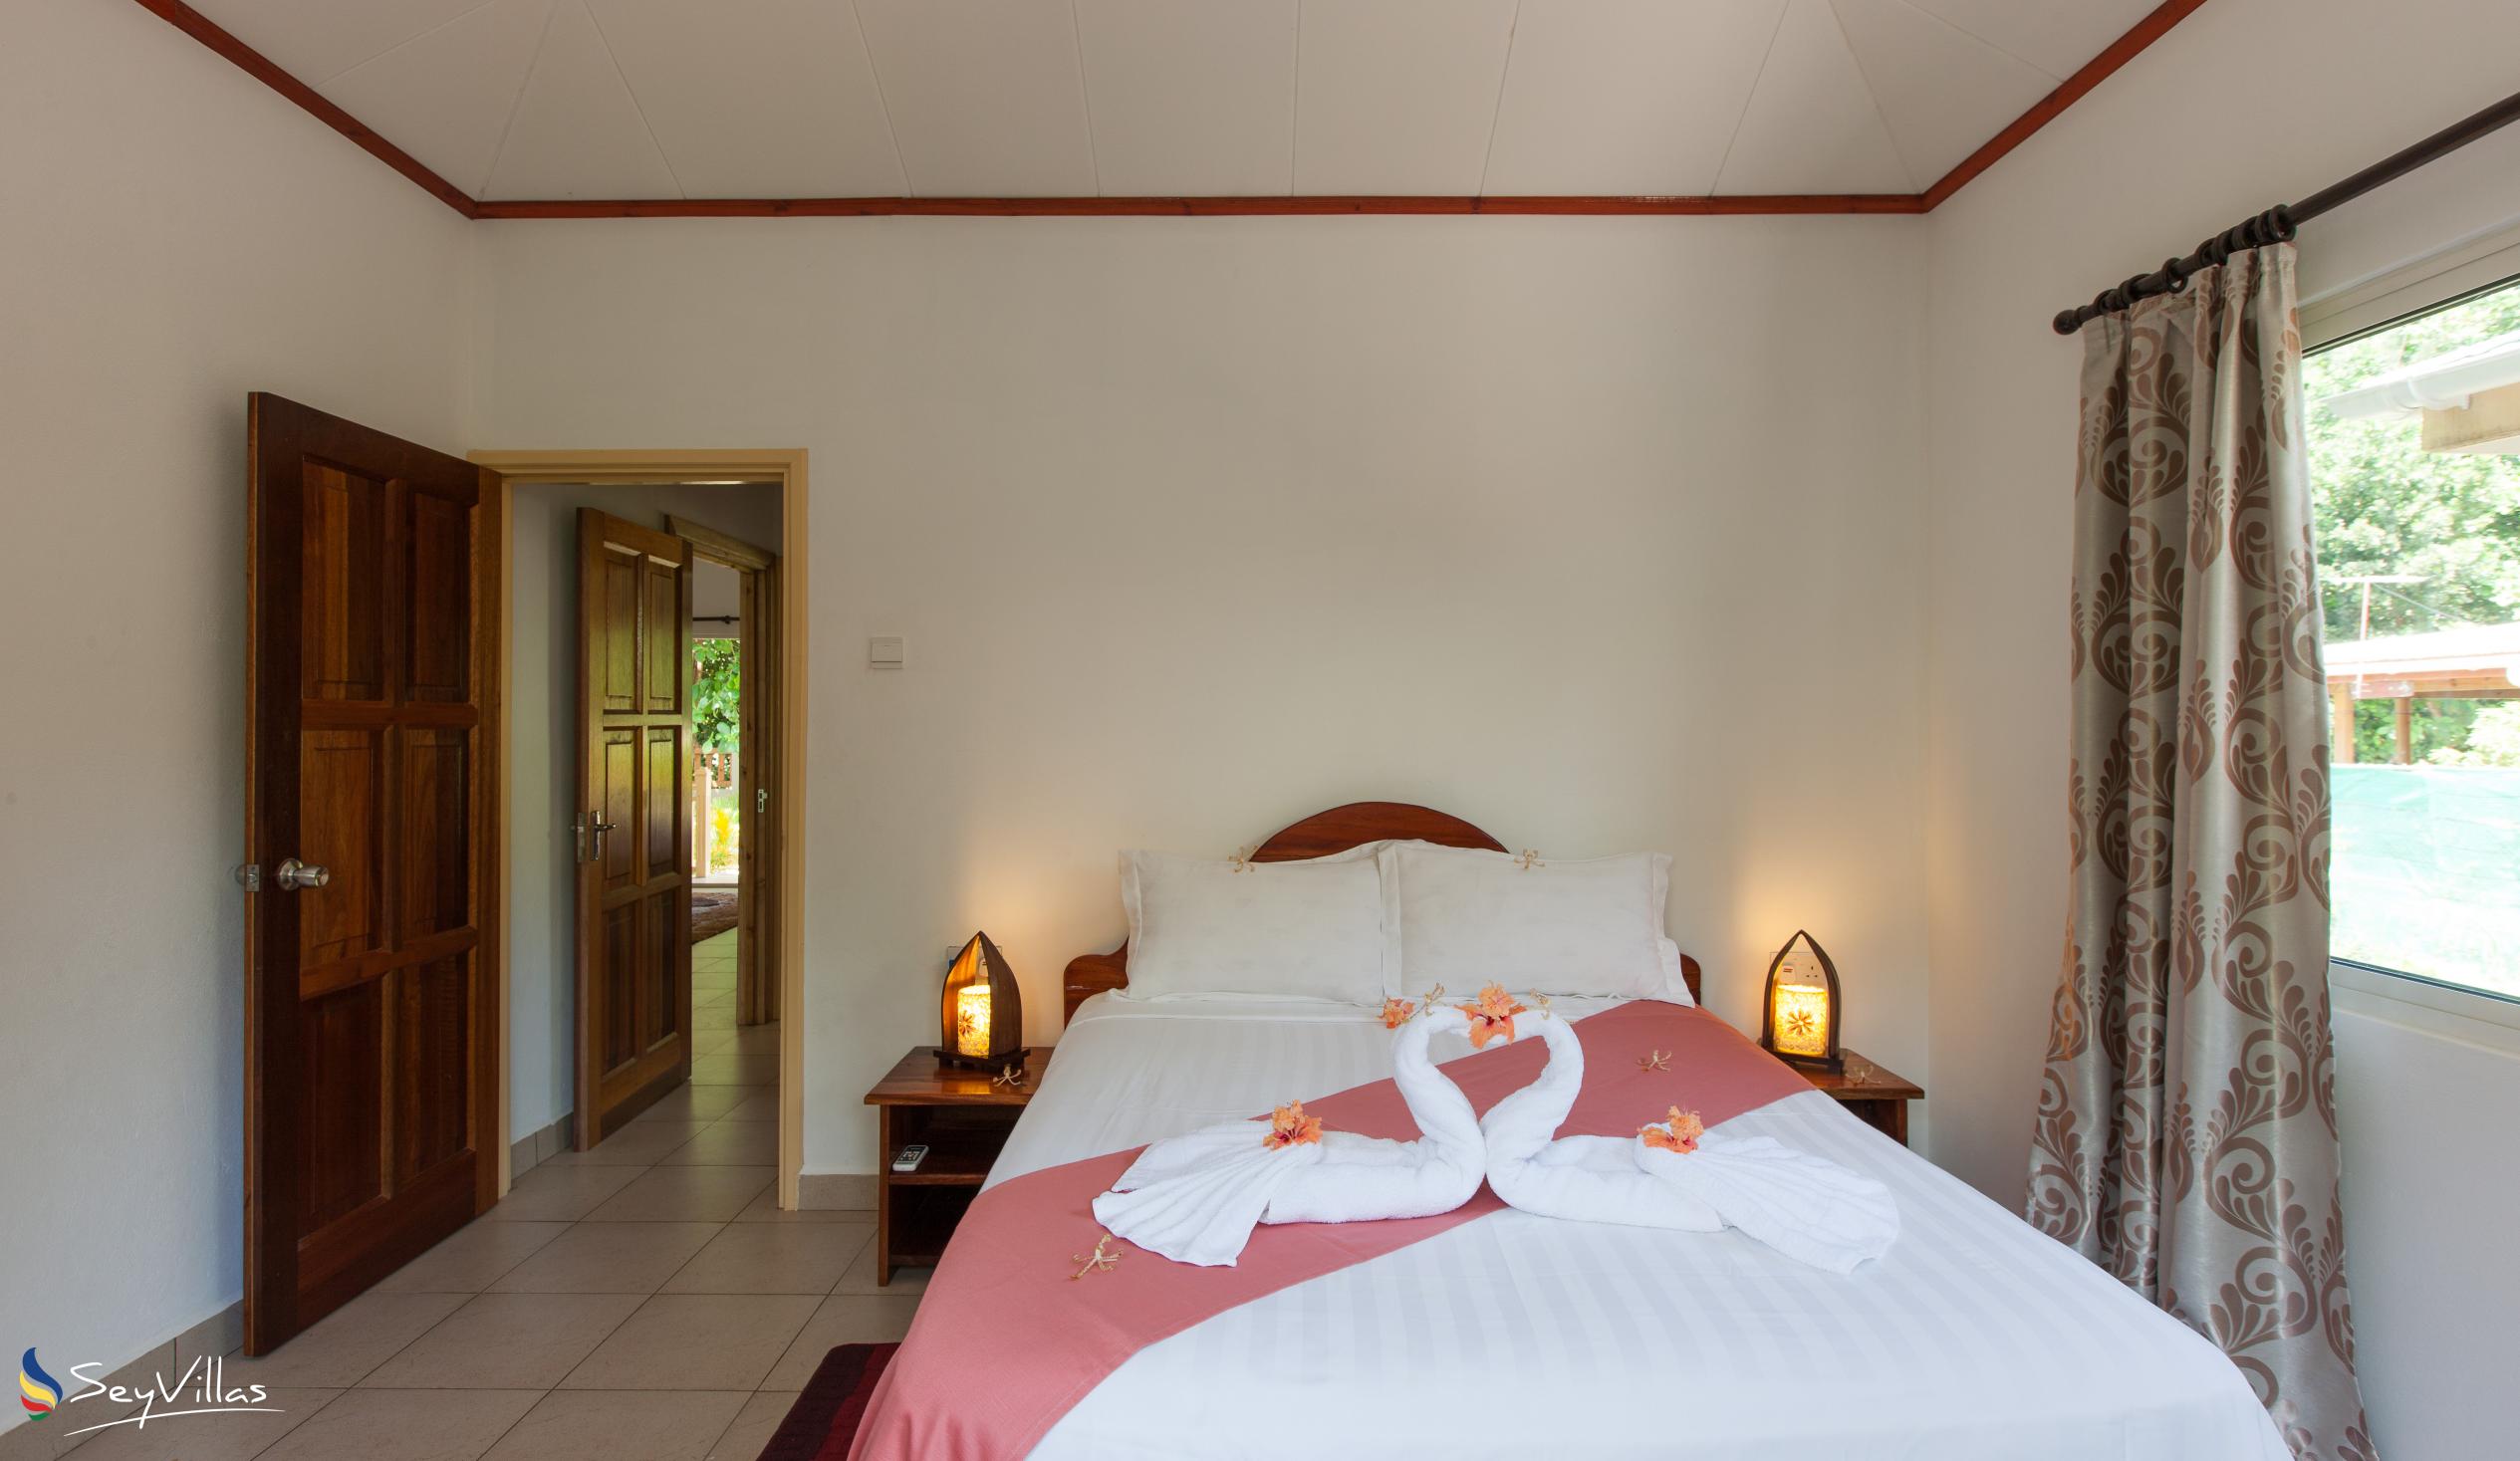 Foto 25: Hostellerie La Digue - Chalet mit 3 Schlafzimmern - La Digue (Seychellen)